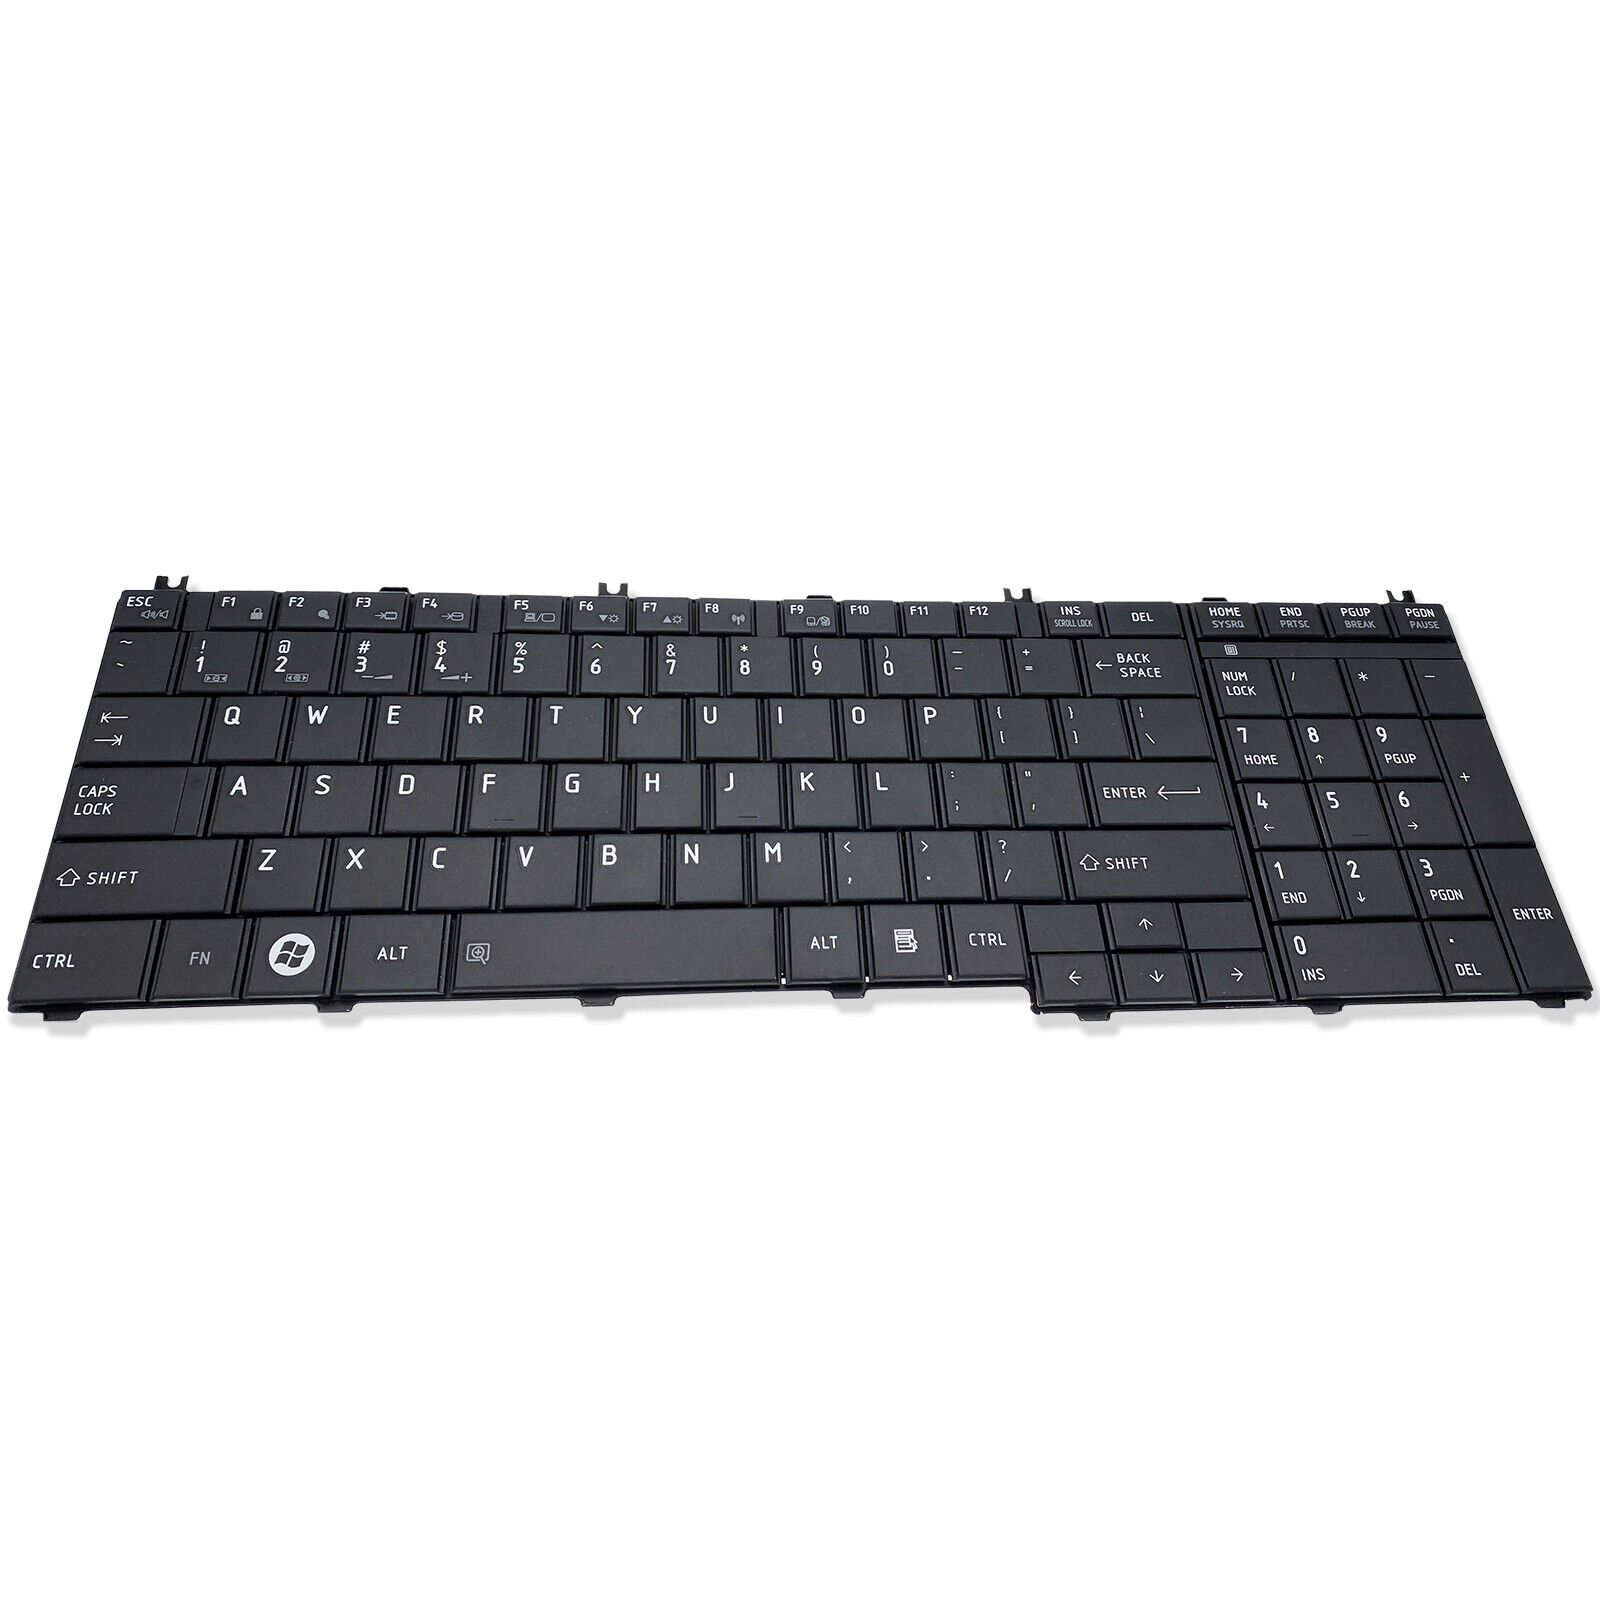 Laptop US Keyboard For Toshiba Satellite L650D L755 L755D L775 L775D Series